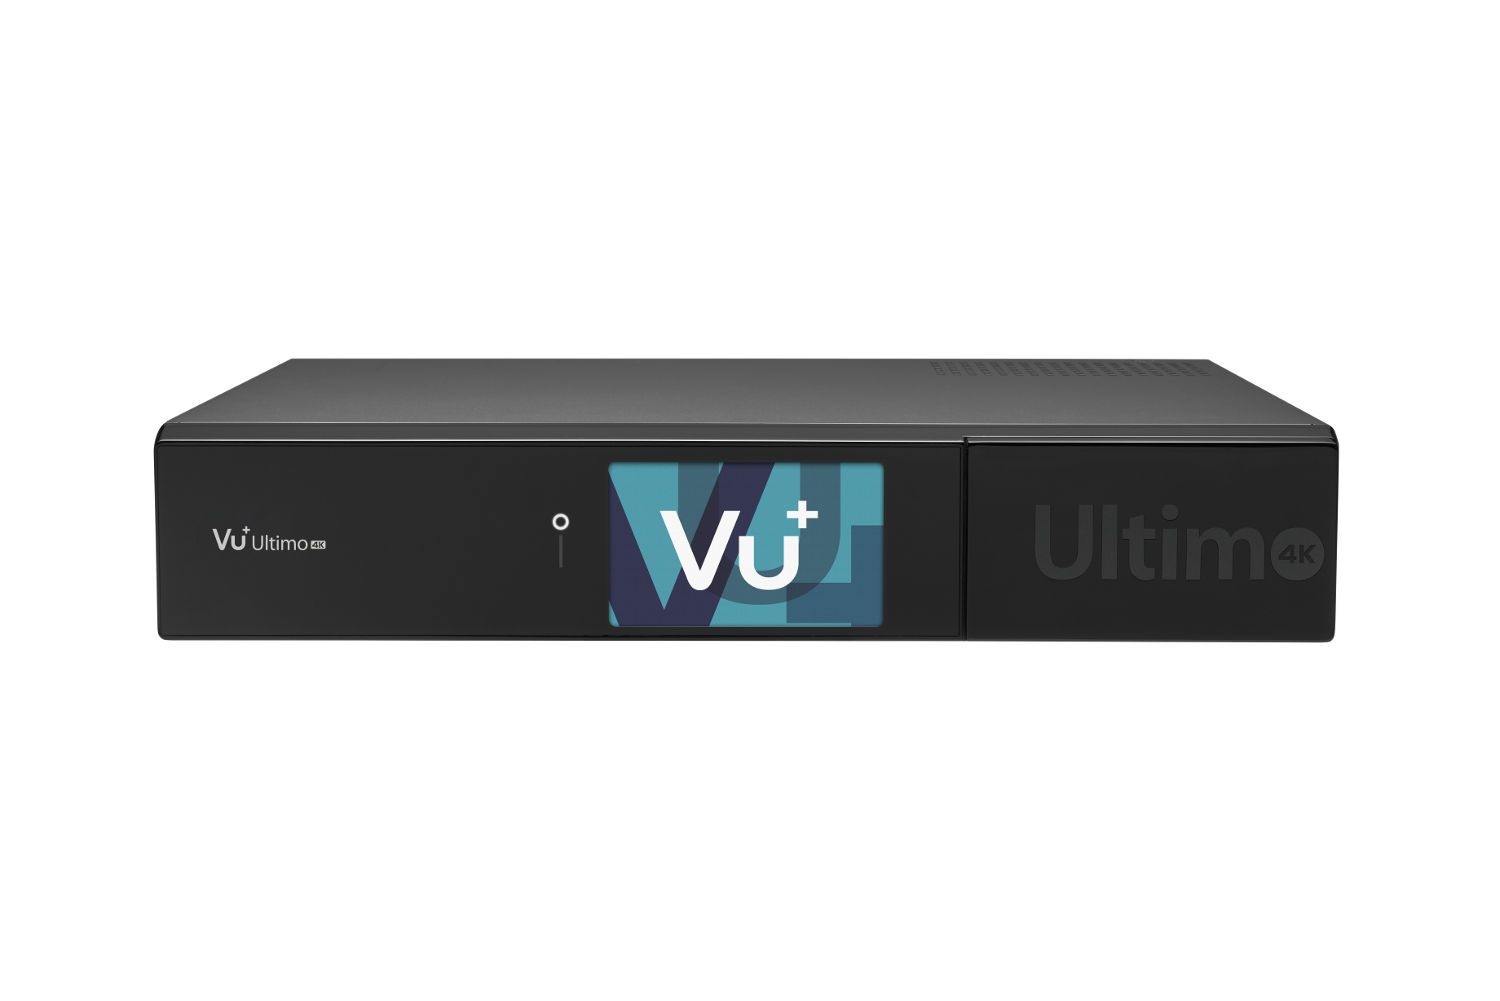 VU+ Ultimo 4K 1x DVB-T2 Dual Tuner 4 TB HDD Linux Receiver UHD 2160p